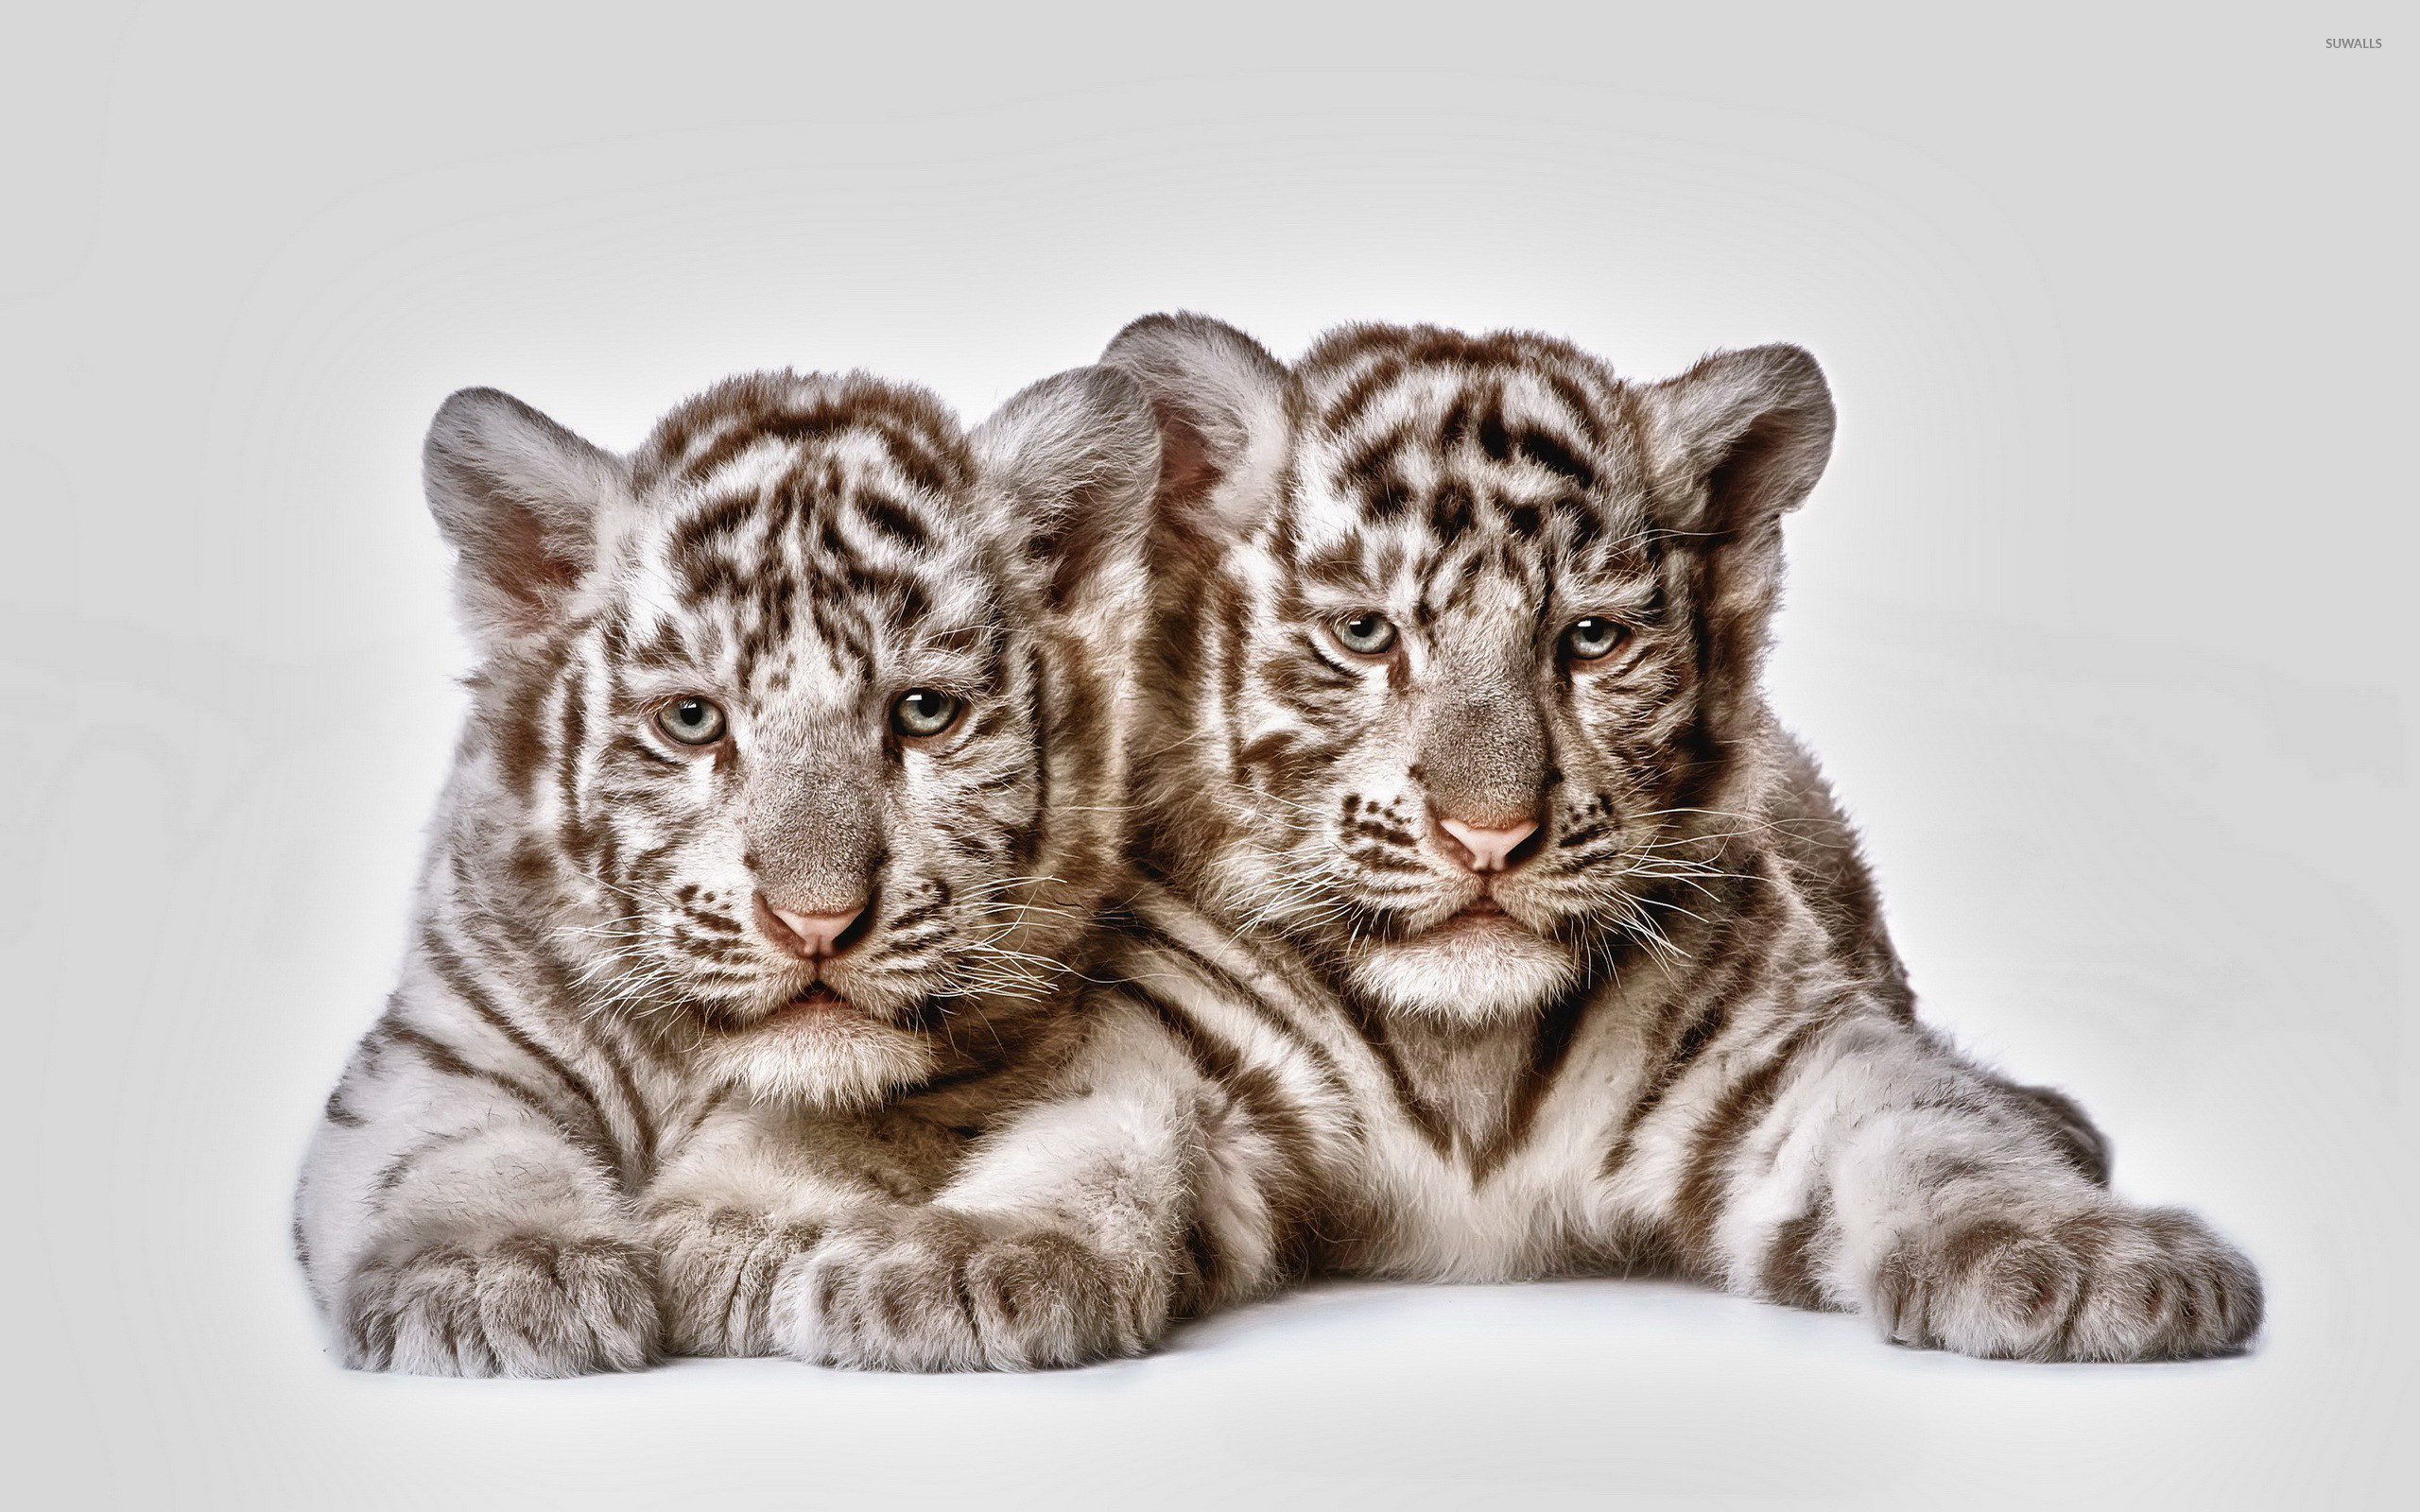 Tiger Cubs Wallpaper 2560x1600